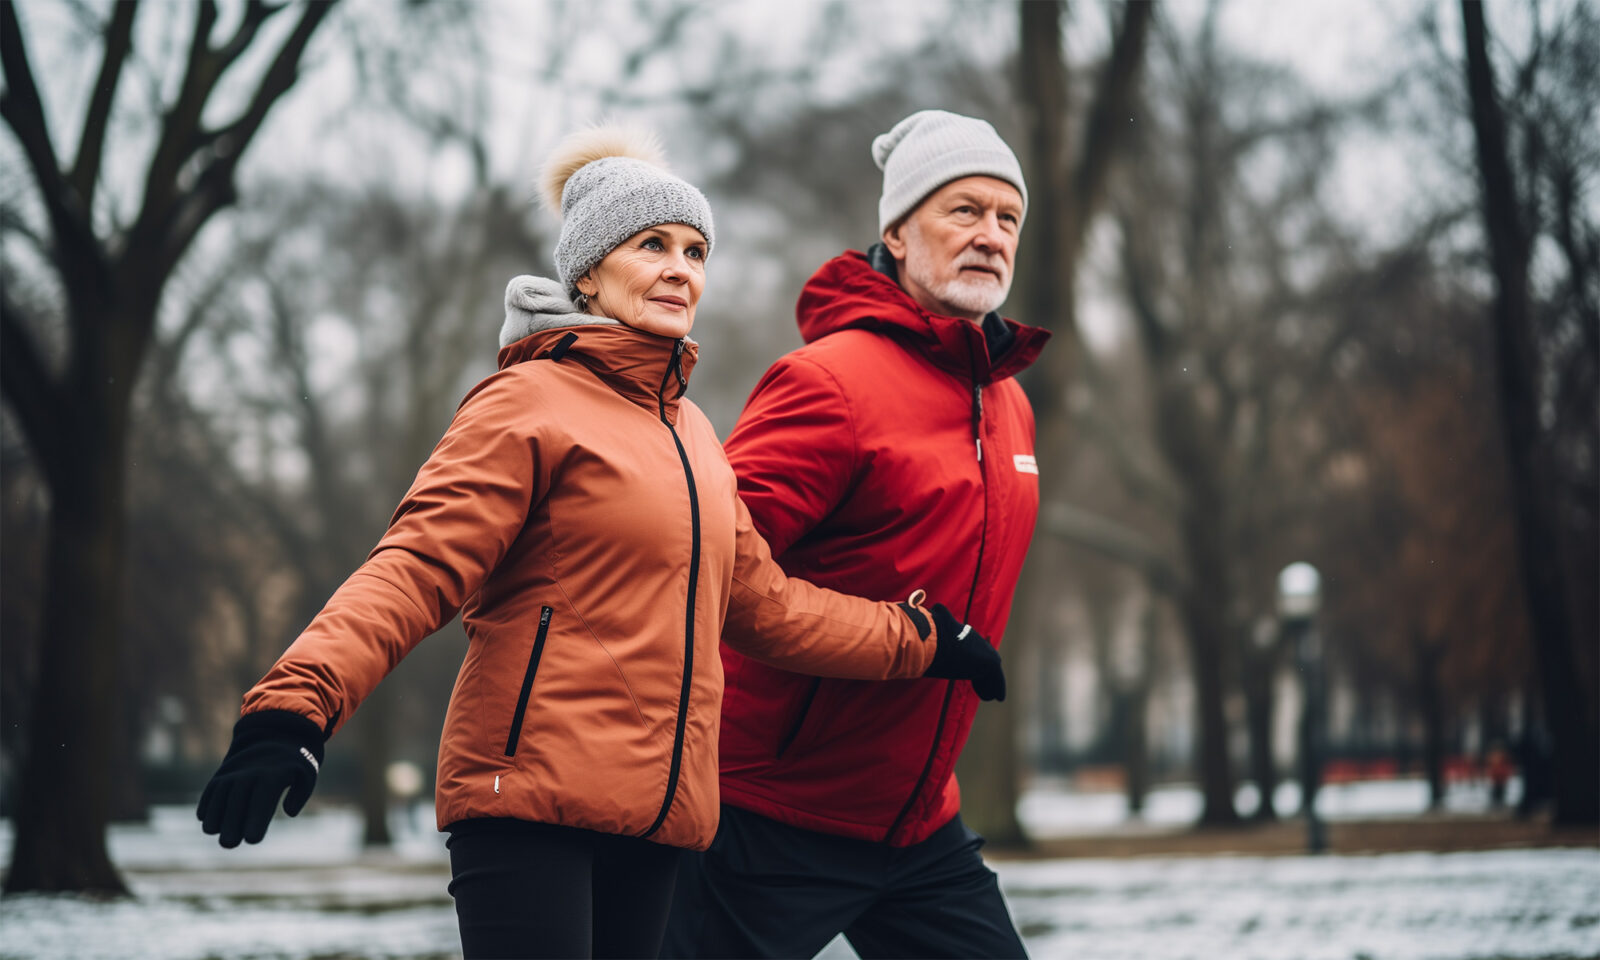 Tijekom zime, tjelovježba može pomoći u borbi protiv sezonskog afektivnog poremećaja i očuvanju mentalnog i fizičkog zdravlja. Unatoč hladnoći, vježbanje može imati mnoge dobrobiti, iako se sagorijevanje kalorija može razlikovati. Dijeljenje aktivnosti s partnerom ili prijateljem može pomoći motivaciji, uz pridržavanje sigurnosnih savjeta za tjelesnu aktivnost u hladnim uvjetima.